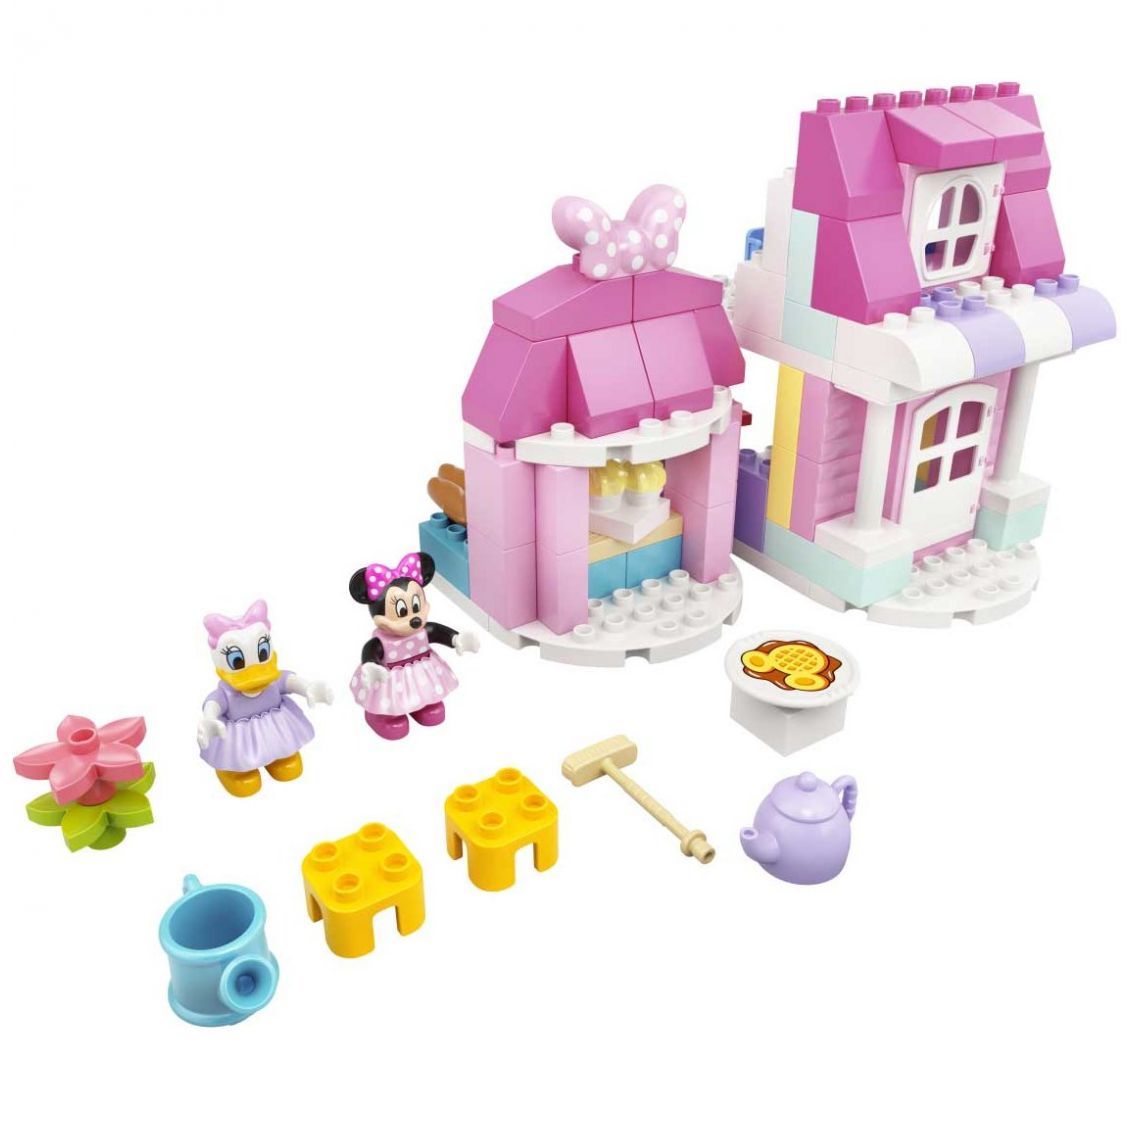 Lego Duplo Casa Y Cafetería de Minnie